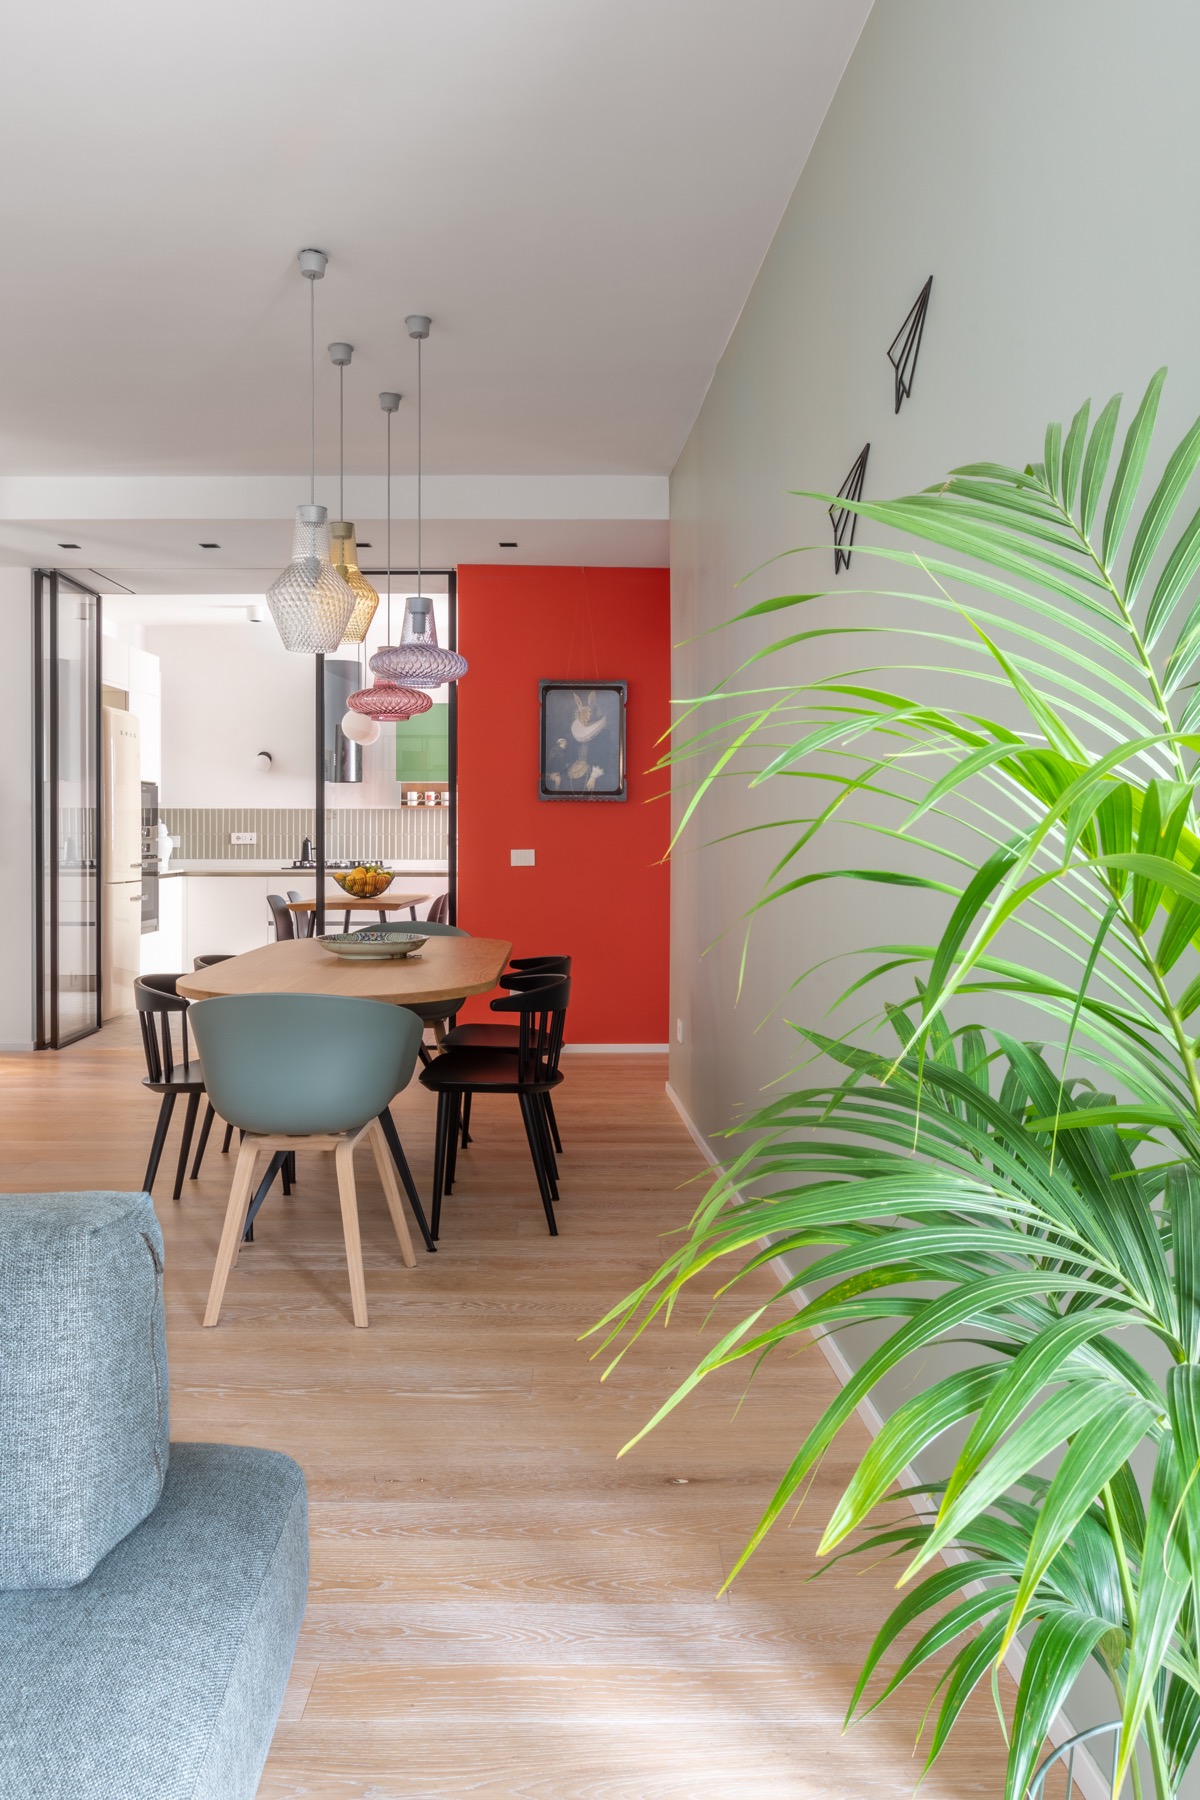 Một bức tường nhấn màu xanh lá giúp phân biệt khu vực ăn uống với không gian phòng khách được thiết kế theo phong cách mở liên thông.